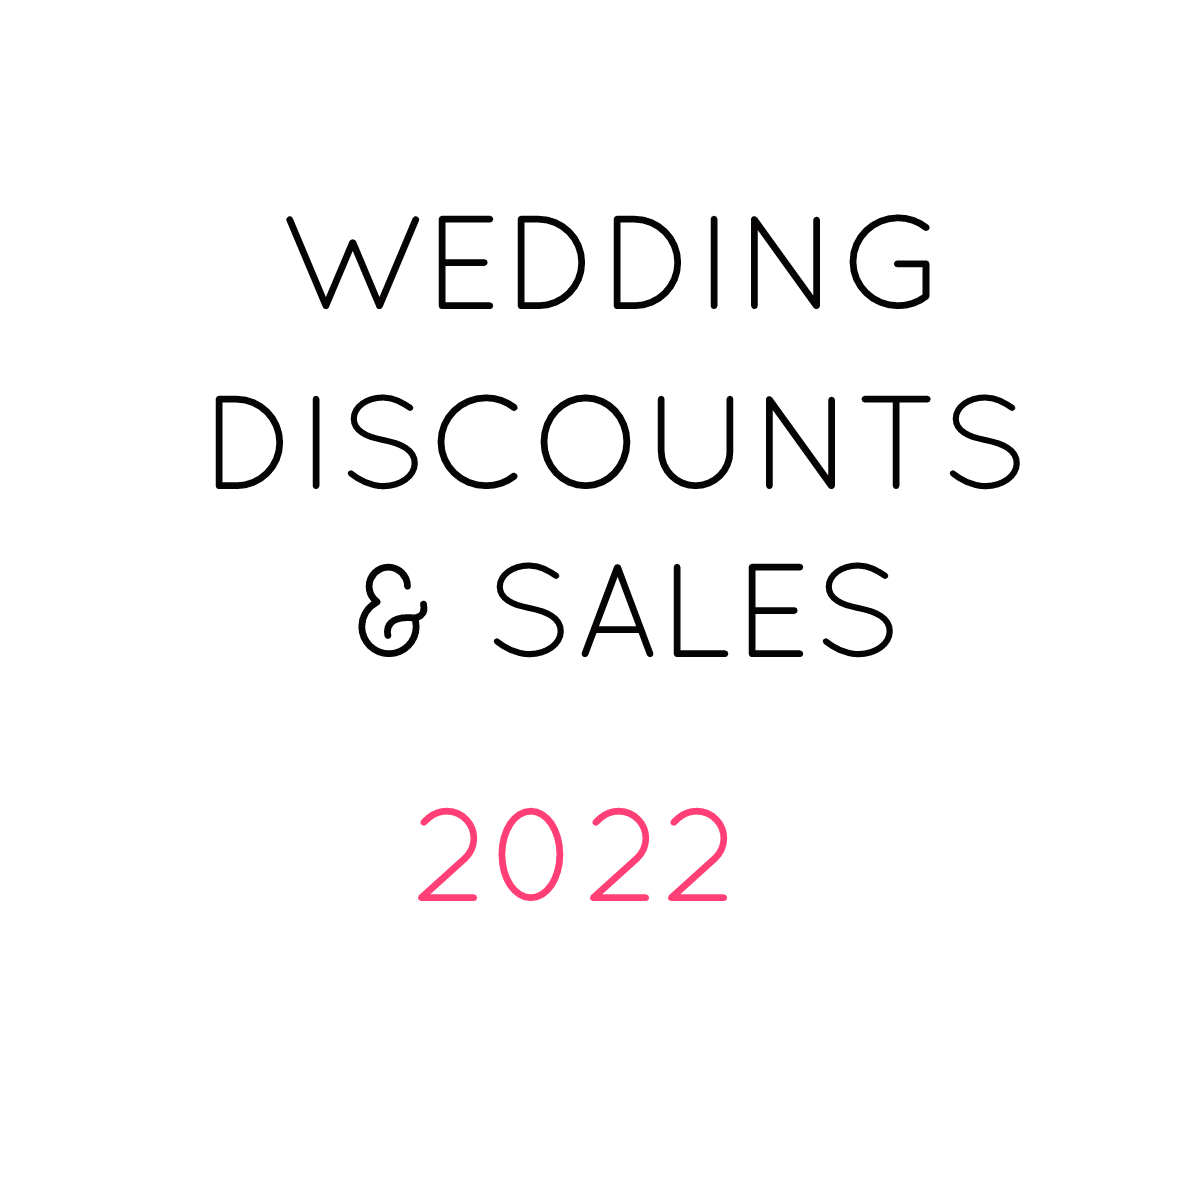 Best Wedding Sales Discounts 